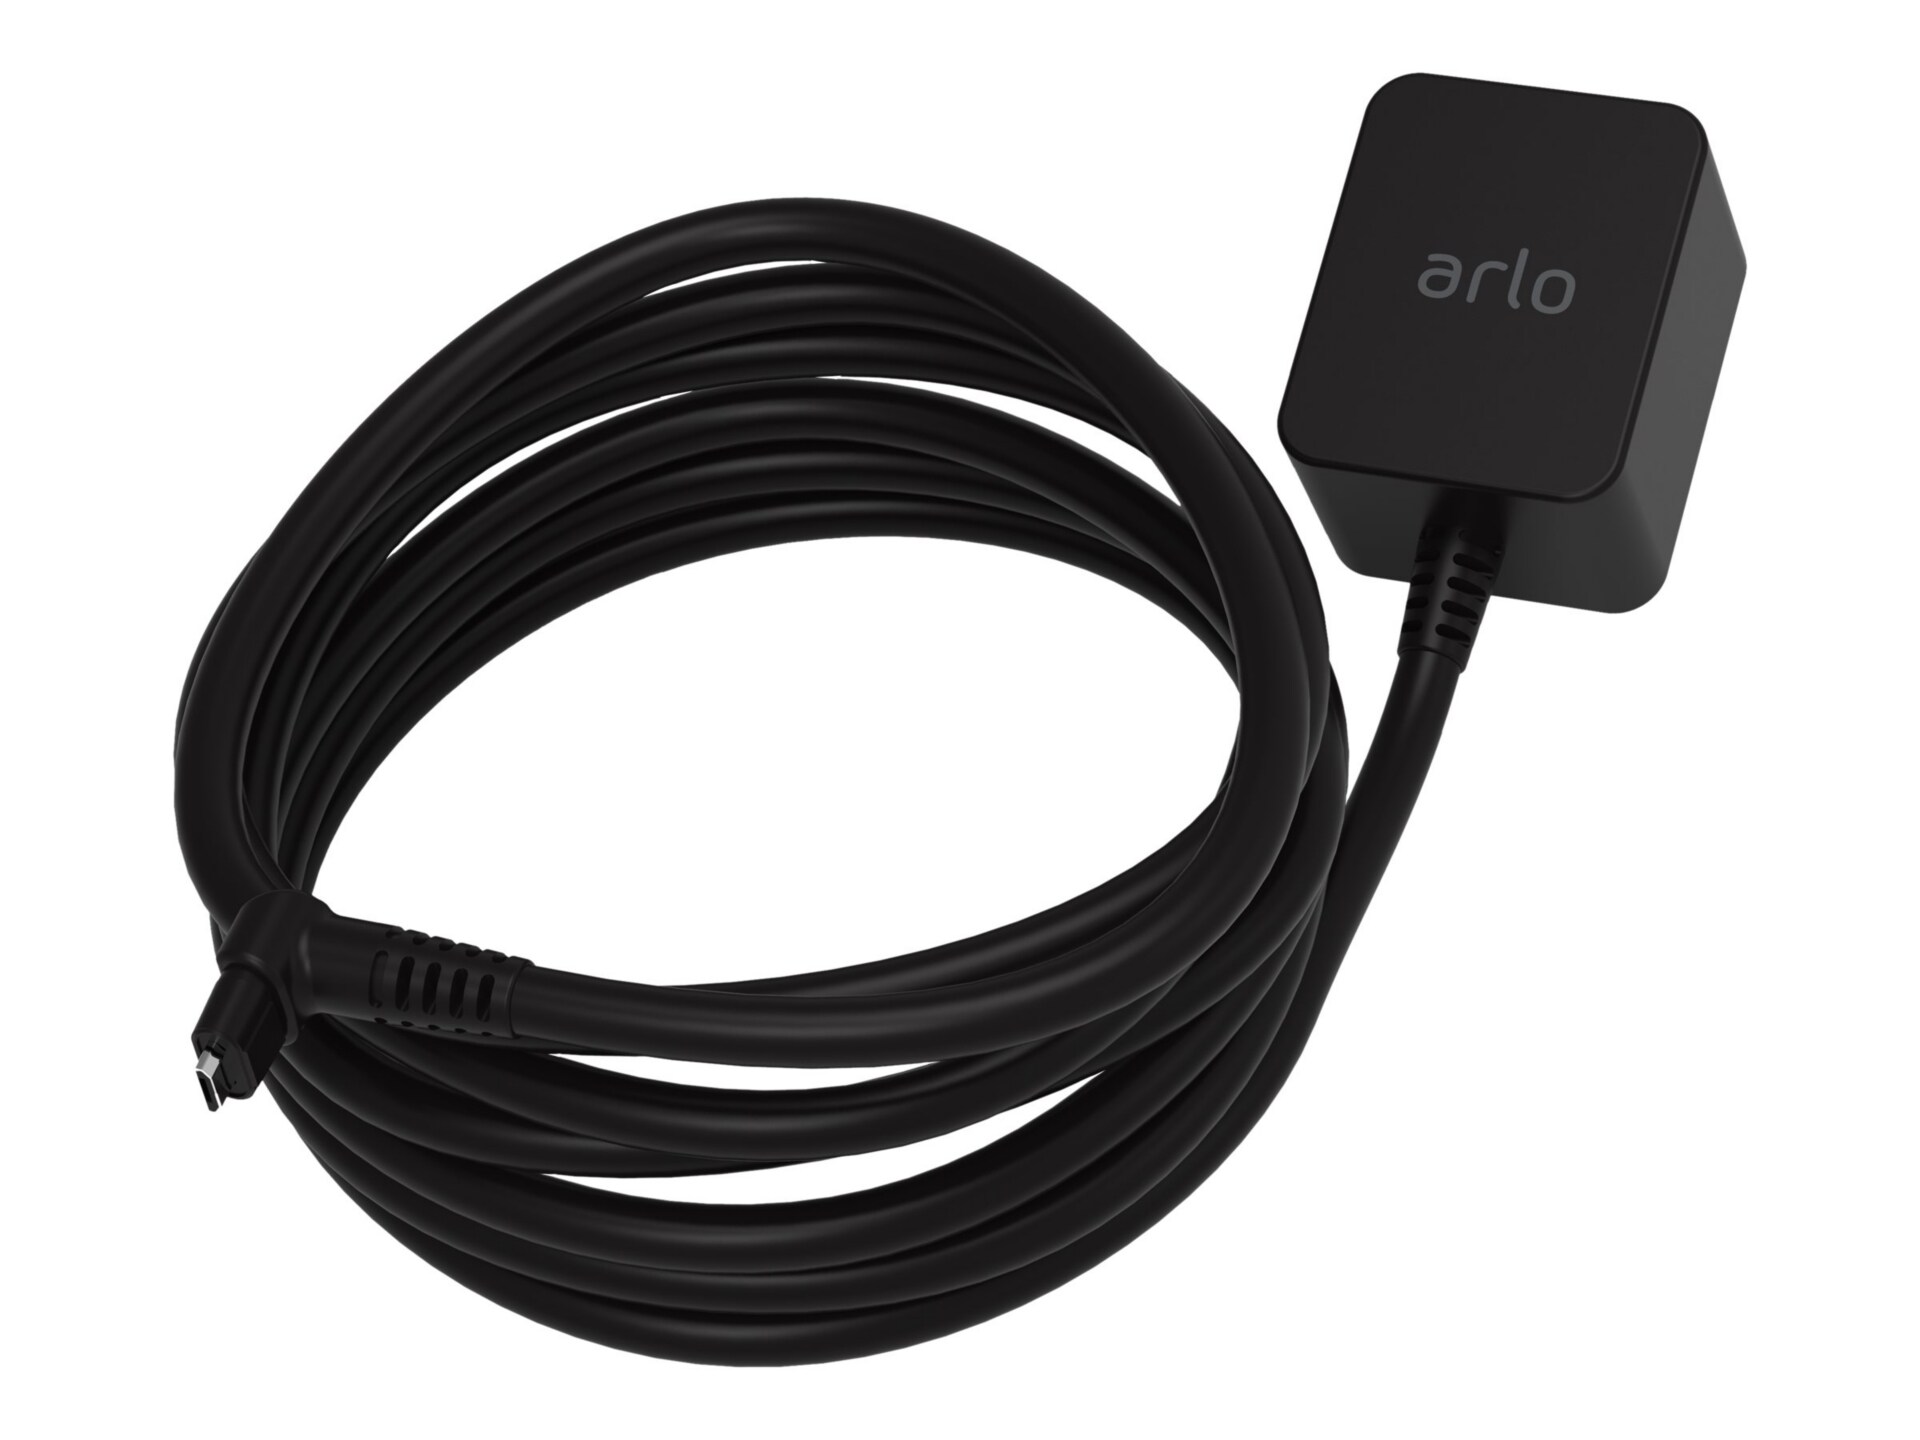 Arlo Outdoor Power Adapter, Arlo Pro/Arlo Pro 2/Arlo Go Comp. (VMA4700)